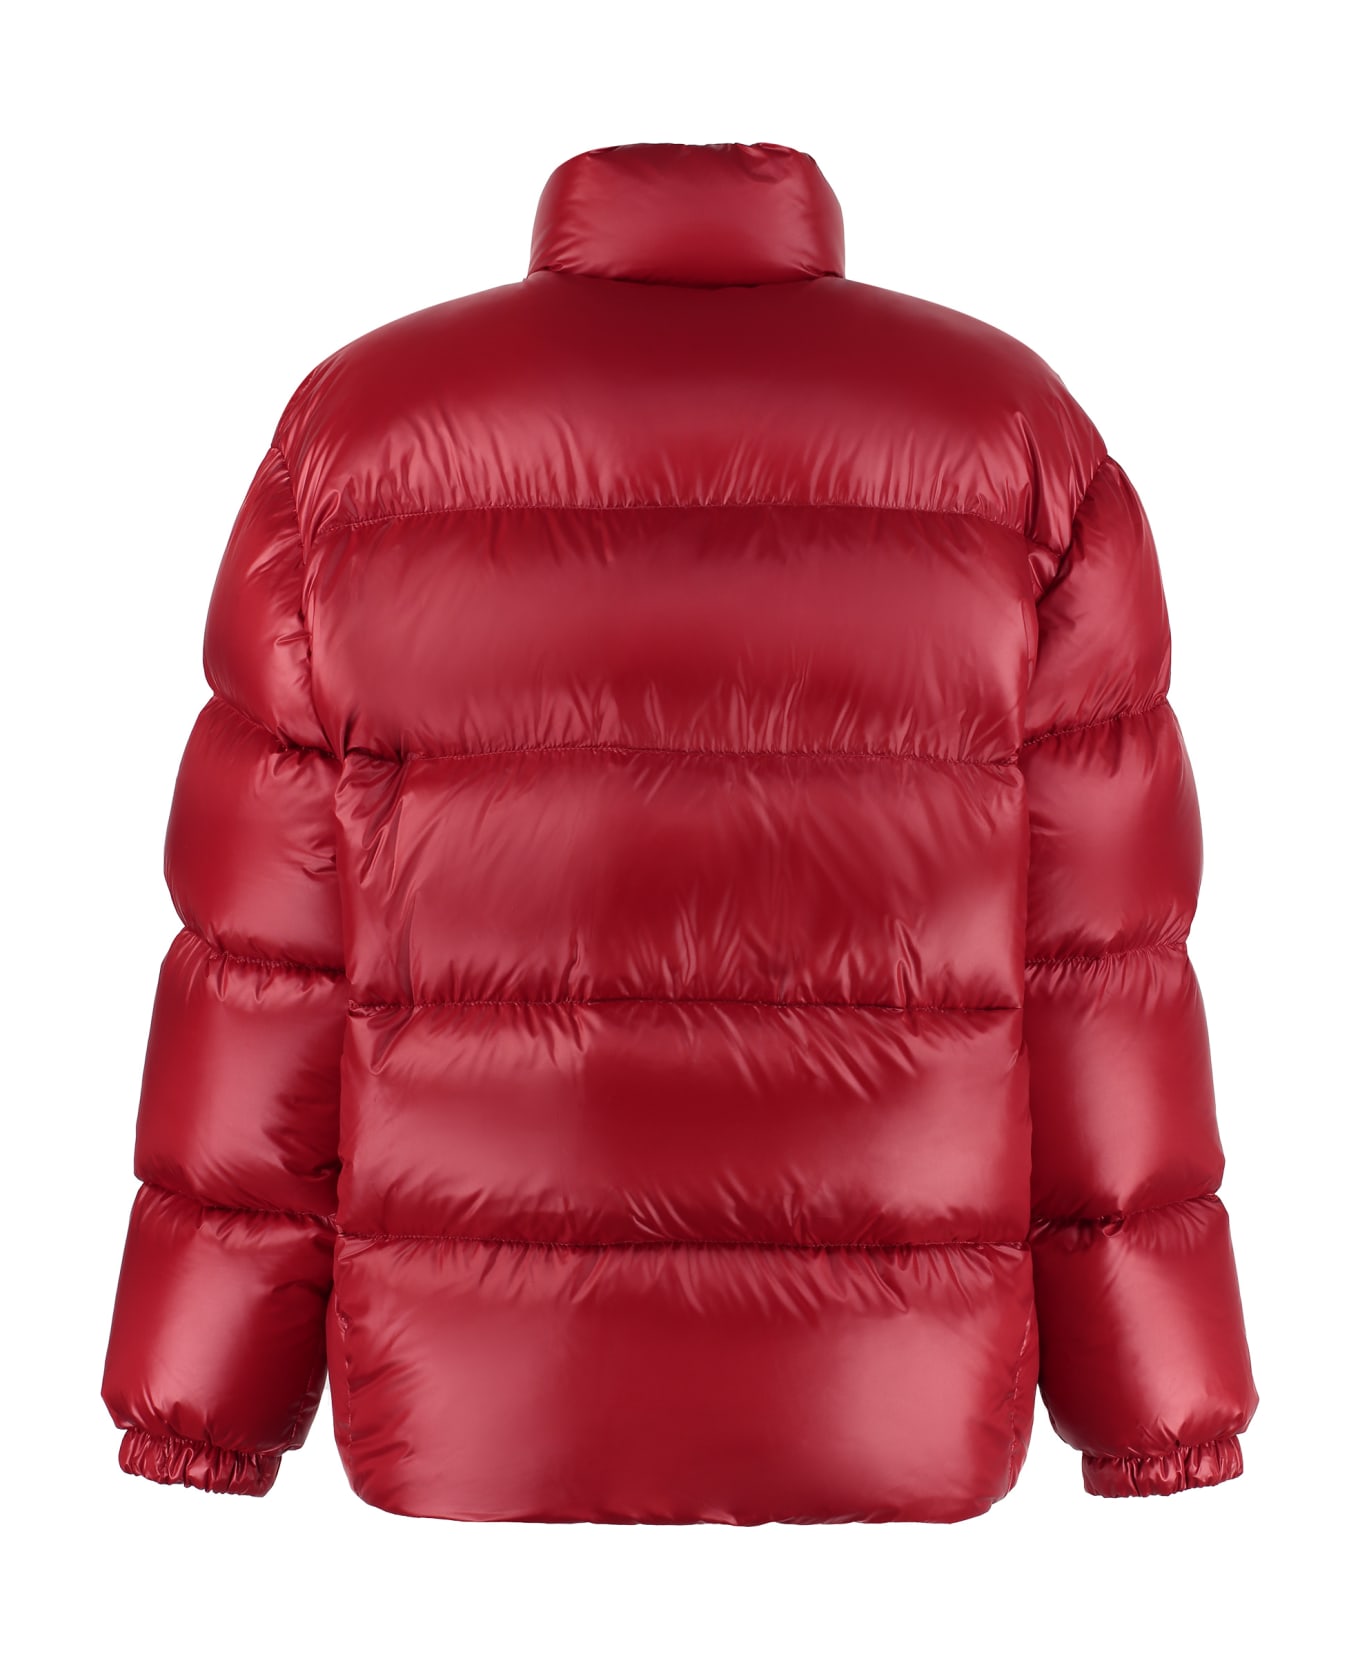 Prada Nylon Padded Jacket - Red